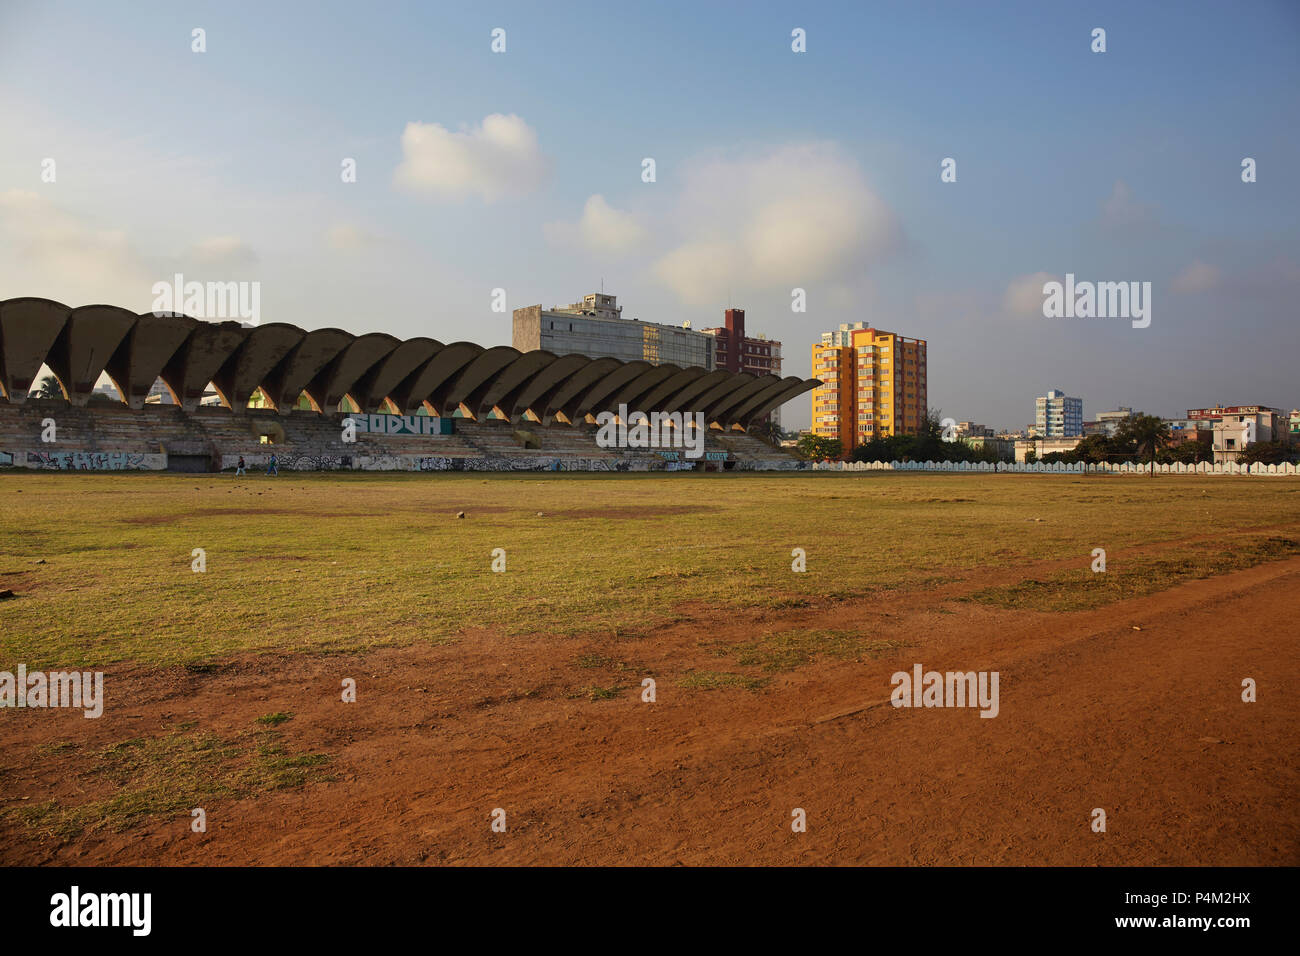 Sunset havana at jose Marti stadium in Havana. Cuba Stock Photo